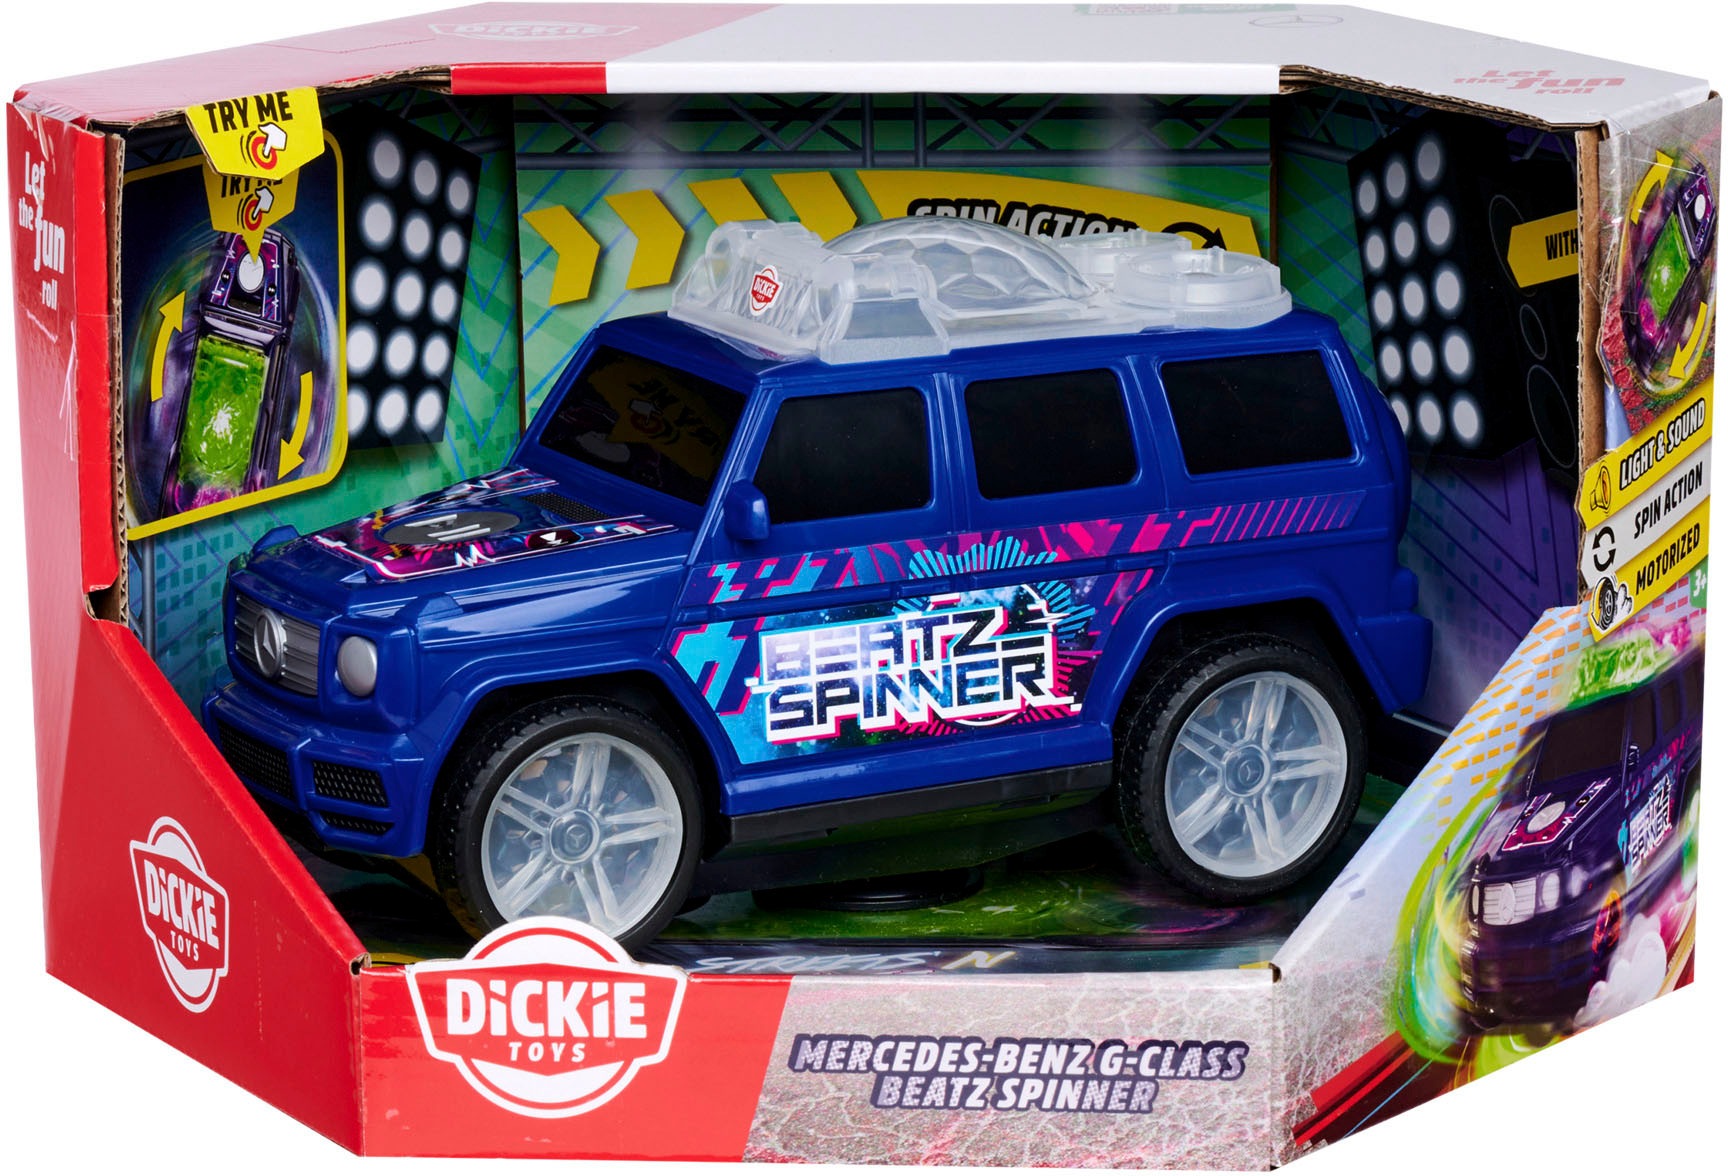 Dickie Toys Spielzeug-Auto »STREETS N BEATZ, Mercedes-Benz G-Class Beat Spinner«, mit Licht & Sound